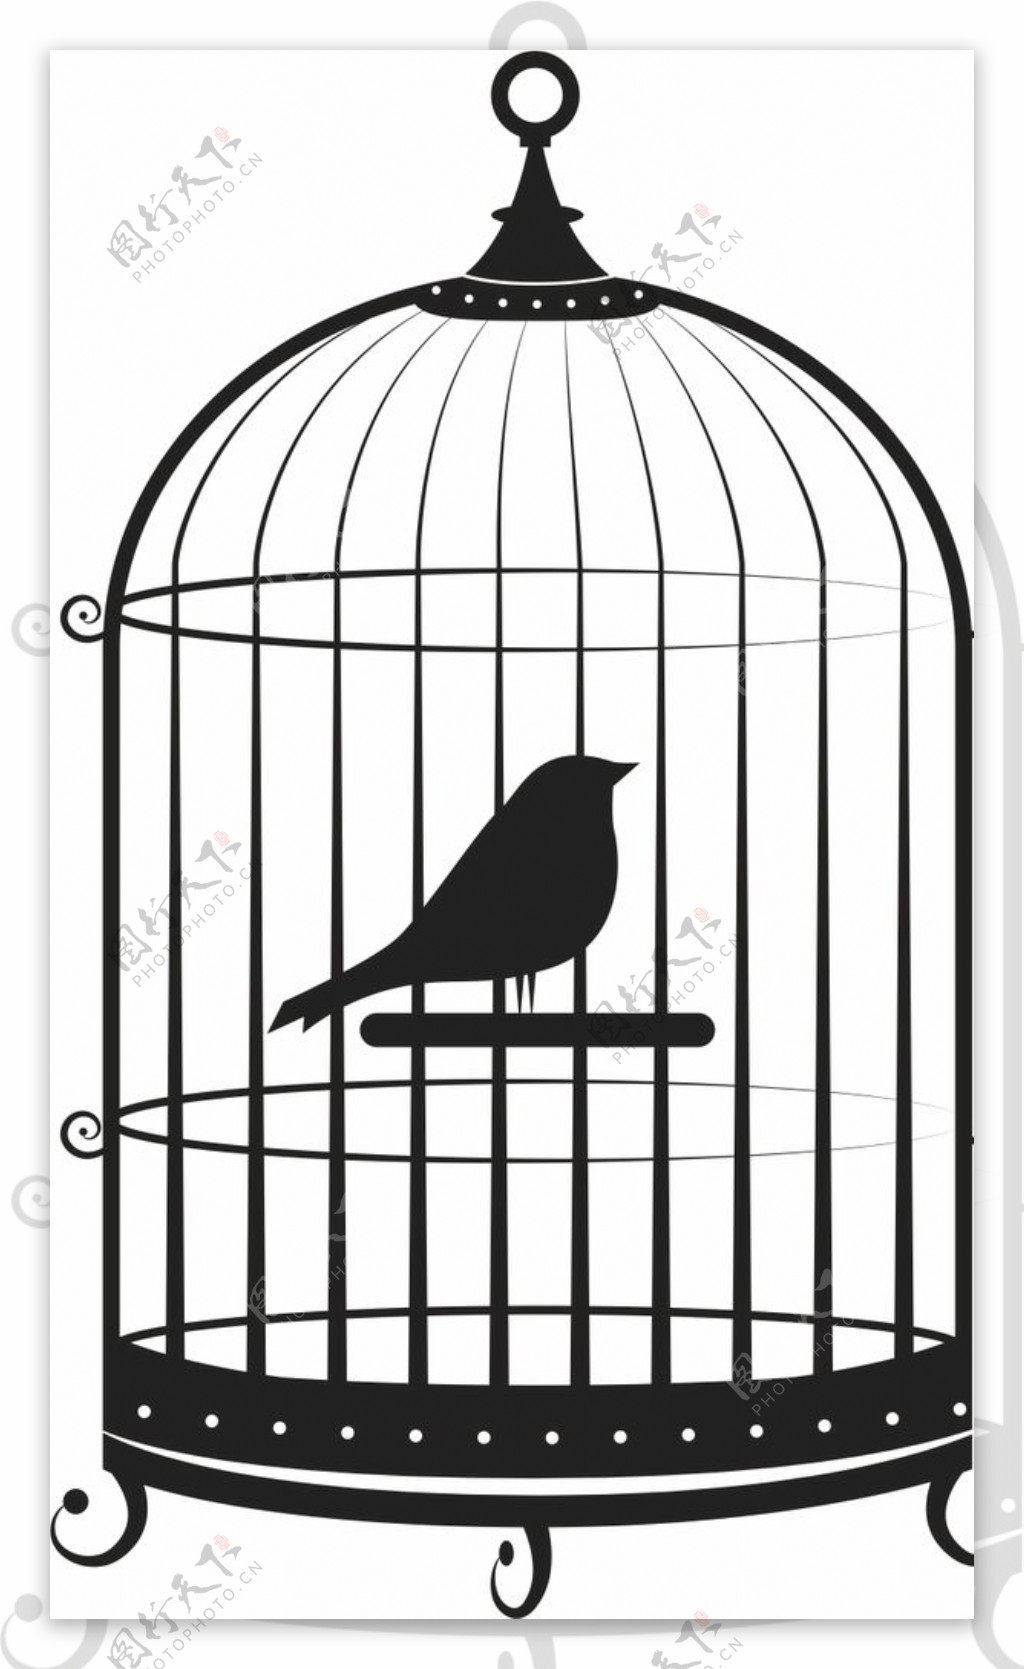 笼中鸟素材-笼中鸟图片-笼中鸟素材图片下载-觅知网